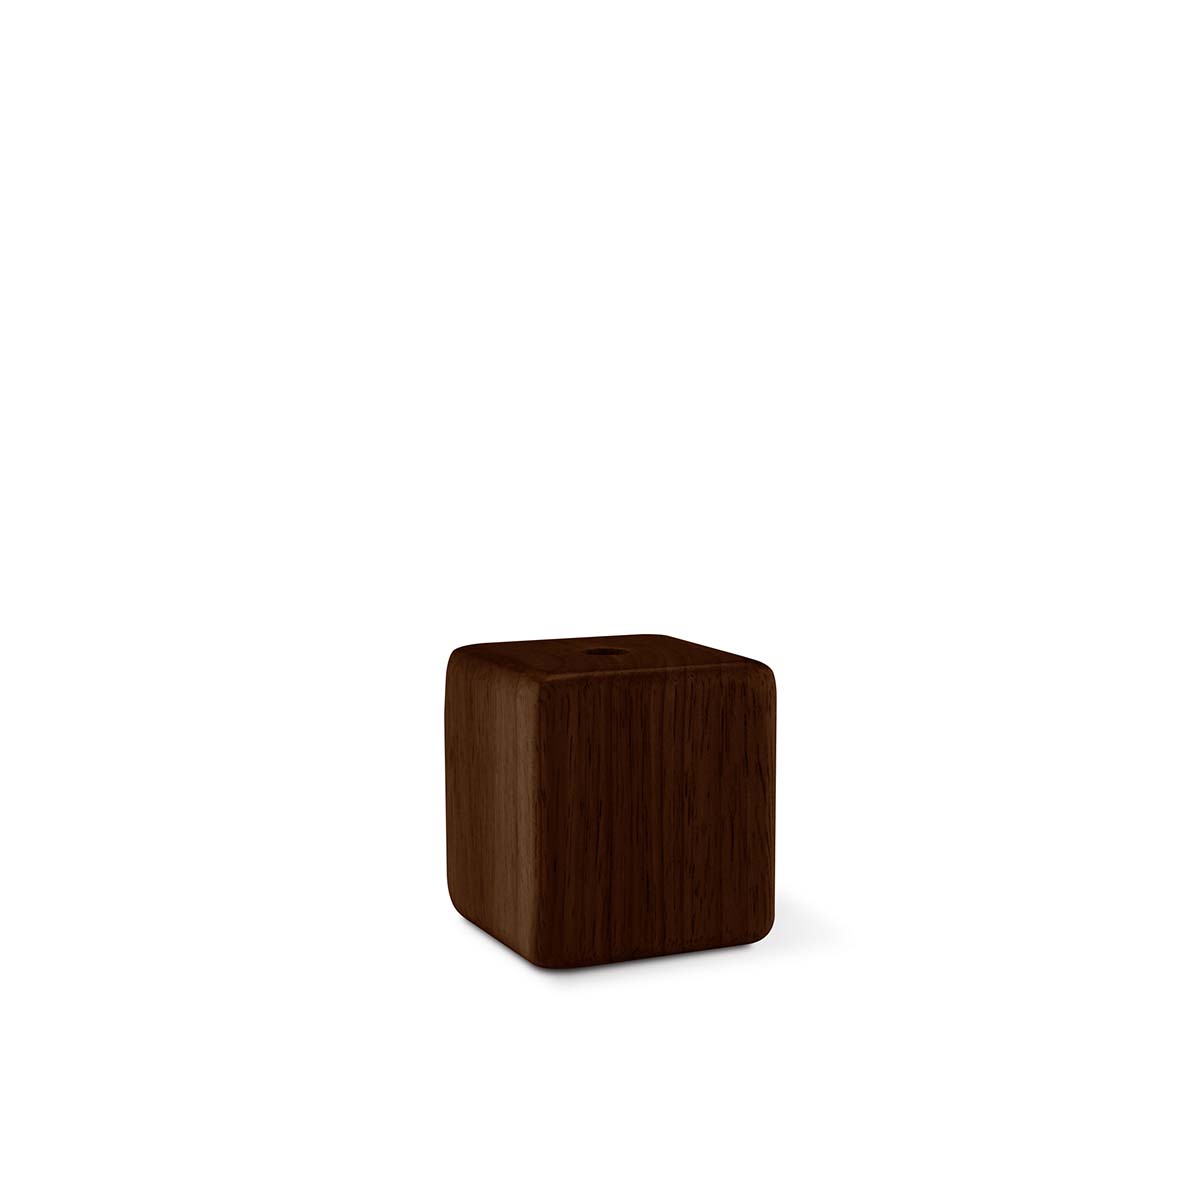 Tangla lighting - TLLH019BN - lamp holder wood - E27 - cube - brown